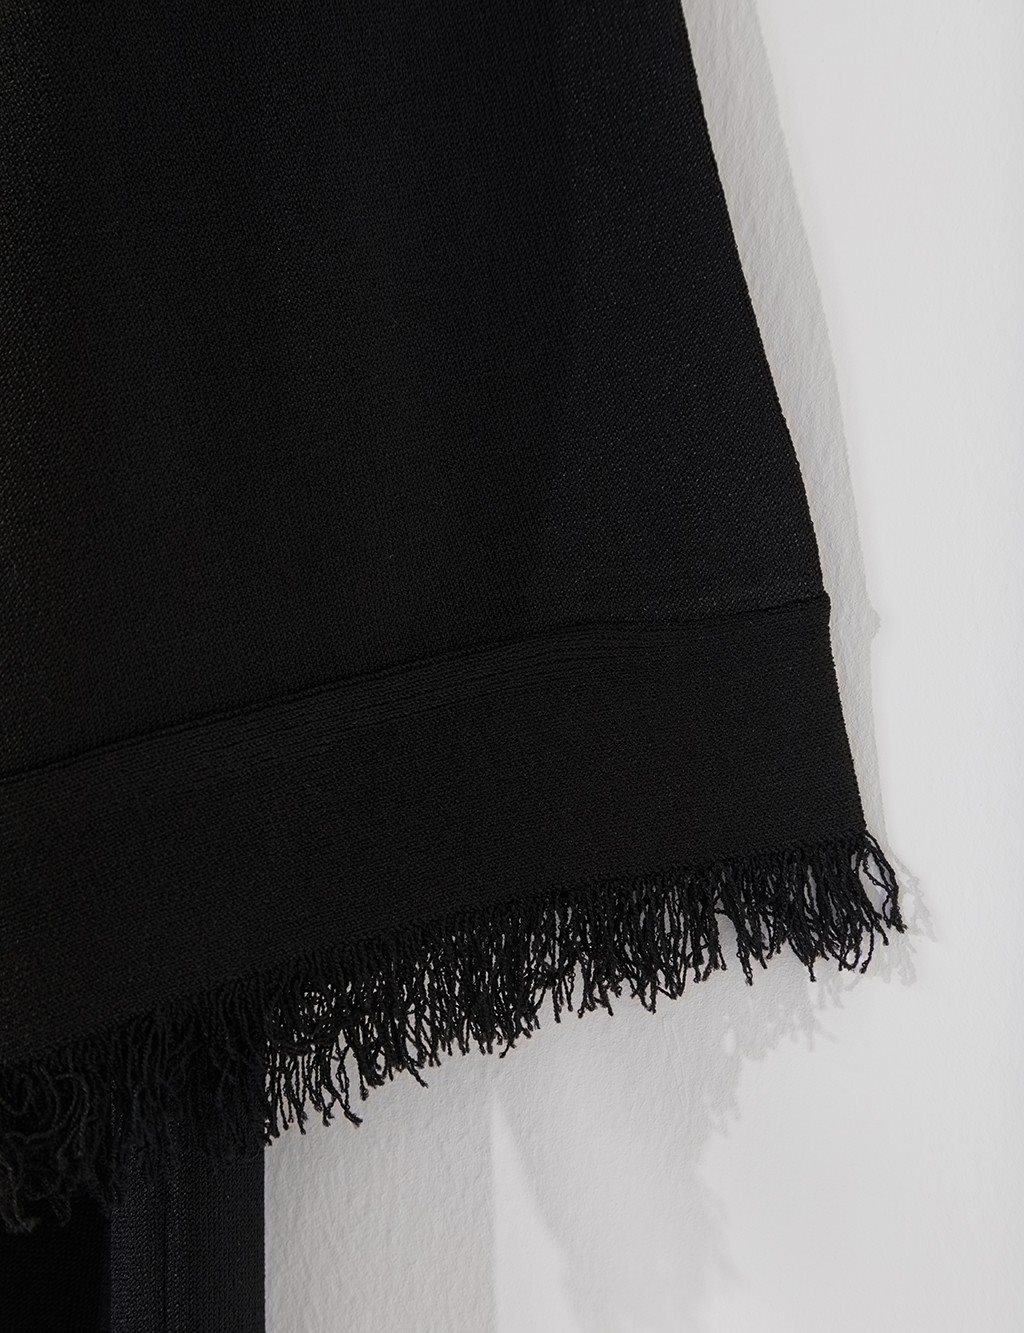 Tasseled Knit Cardigan B21 TRK02 Black